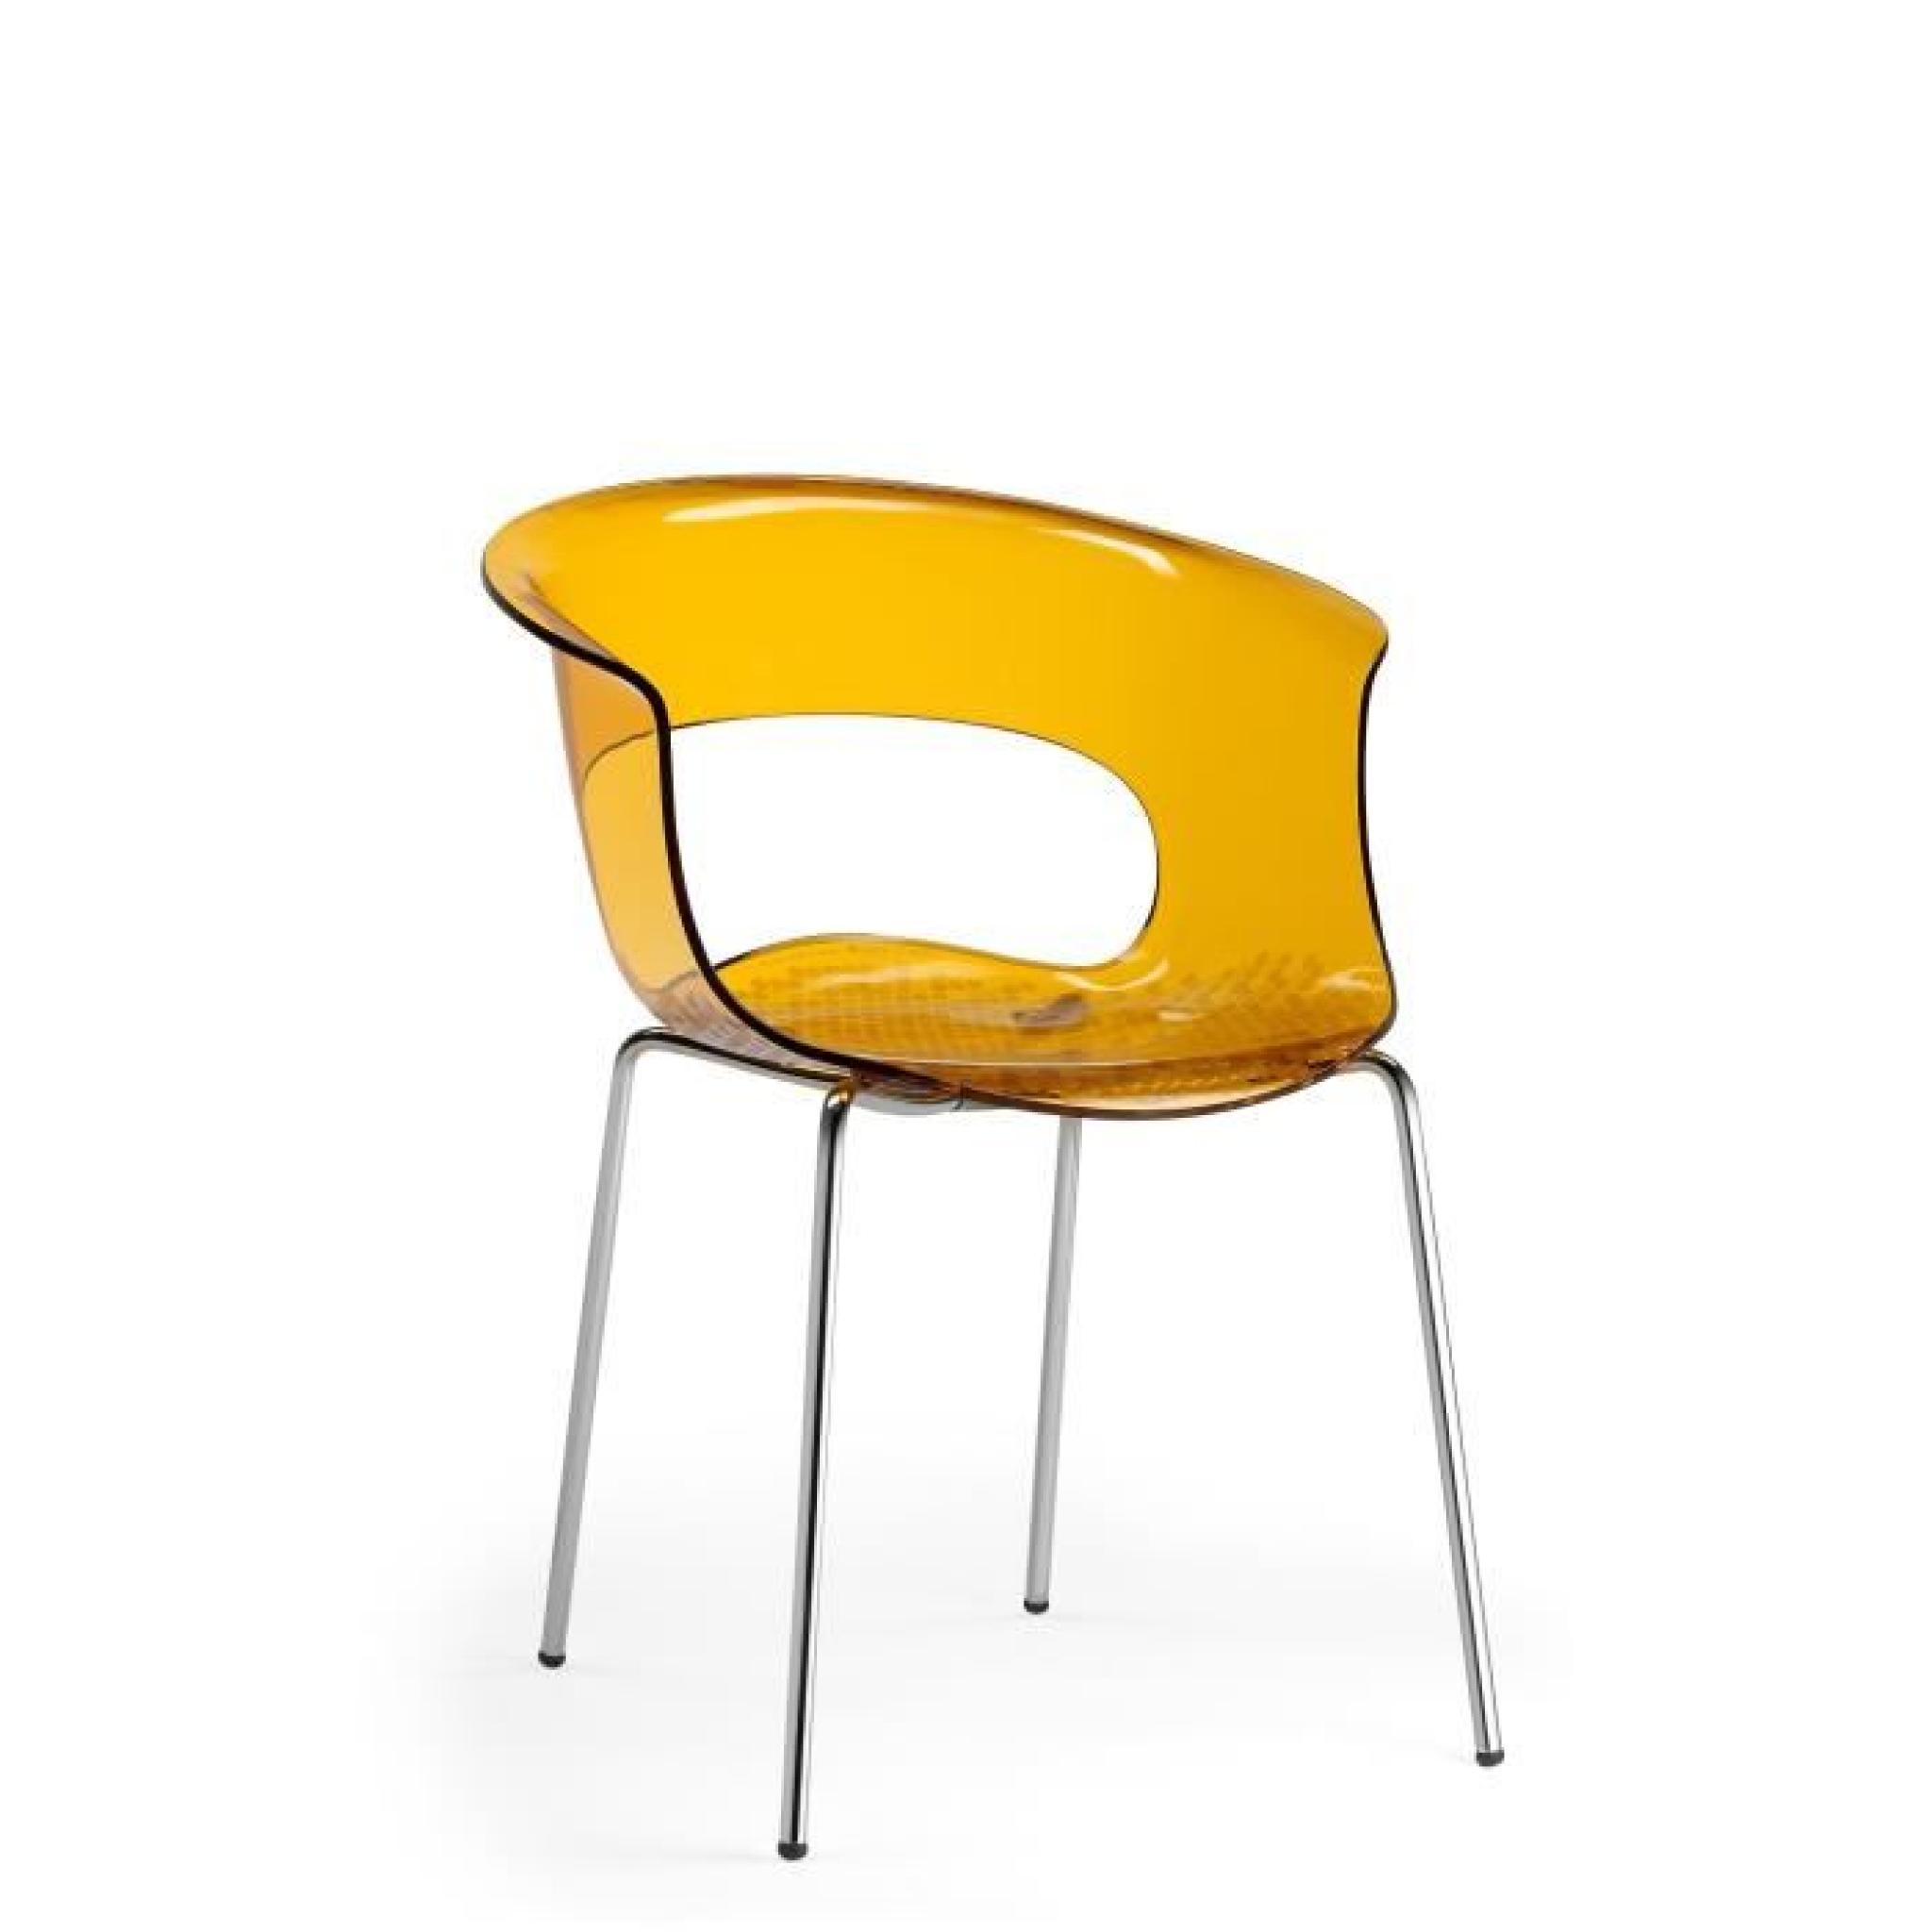 Chaise design - MISS B ANTICHOCK 4 legs - deco Orange transparent